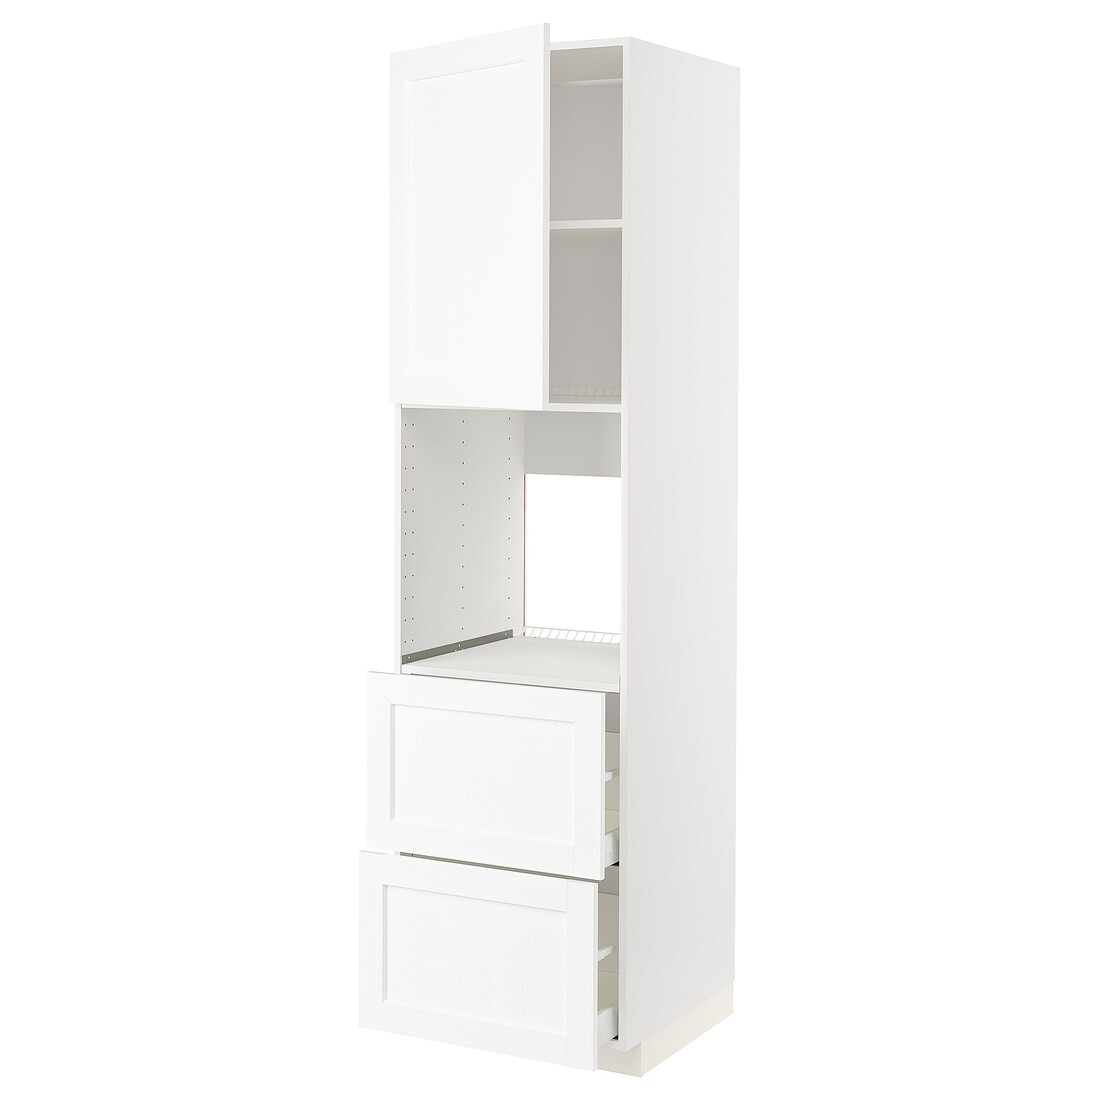 METOD МЕТОД / MAXIMERA МАКСИМЕРА Высокий шкаф для духовки с дверцей / ящиками, белый Enköping / белый имитация дерева, 60x60x220 см